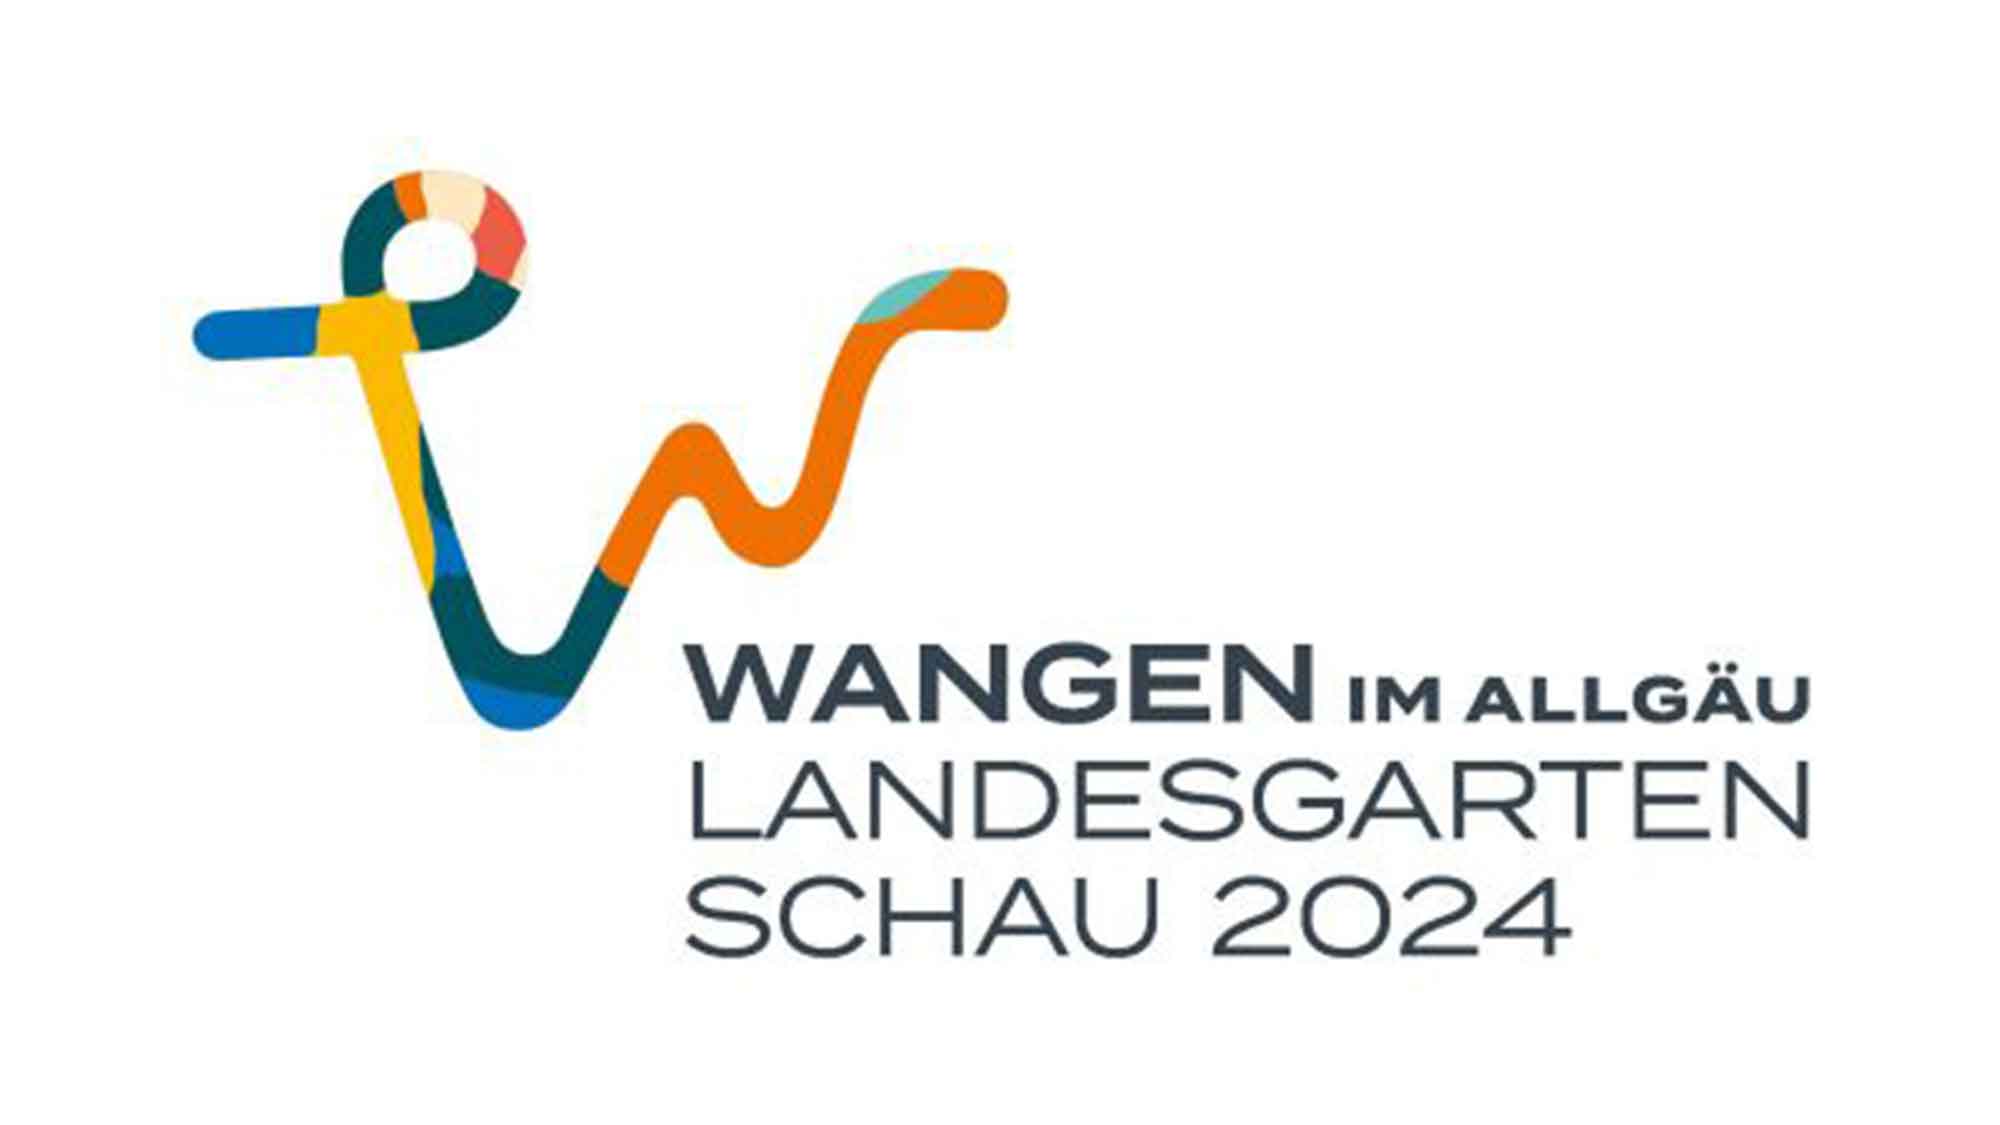 Die Top Acts der Landesgartenschau Wangen im Allgäu 2024